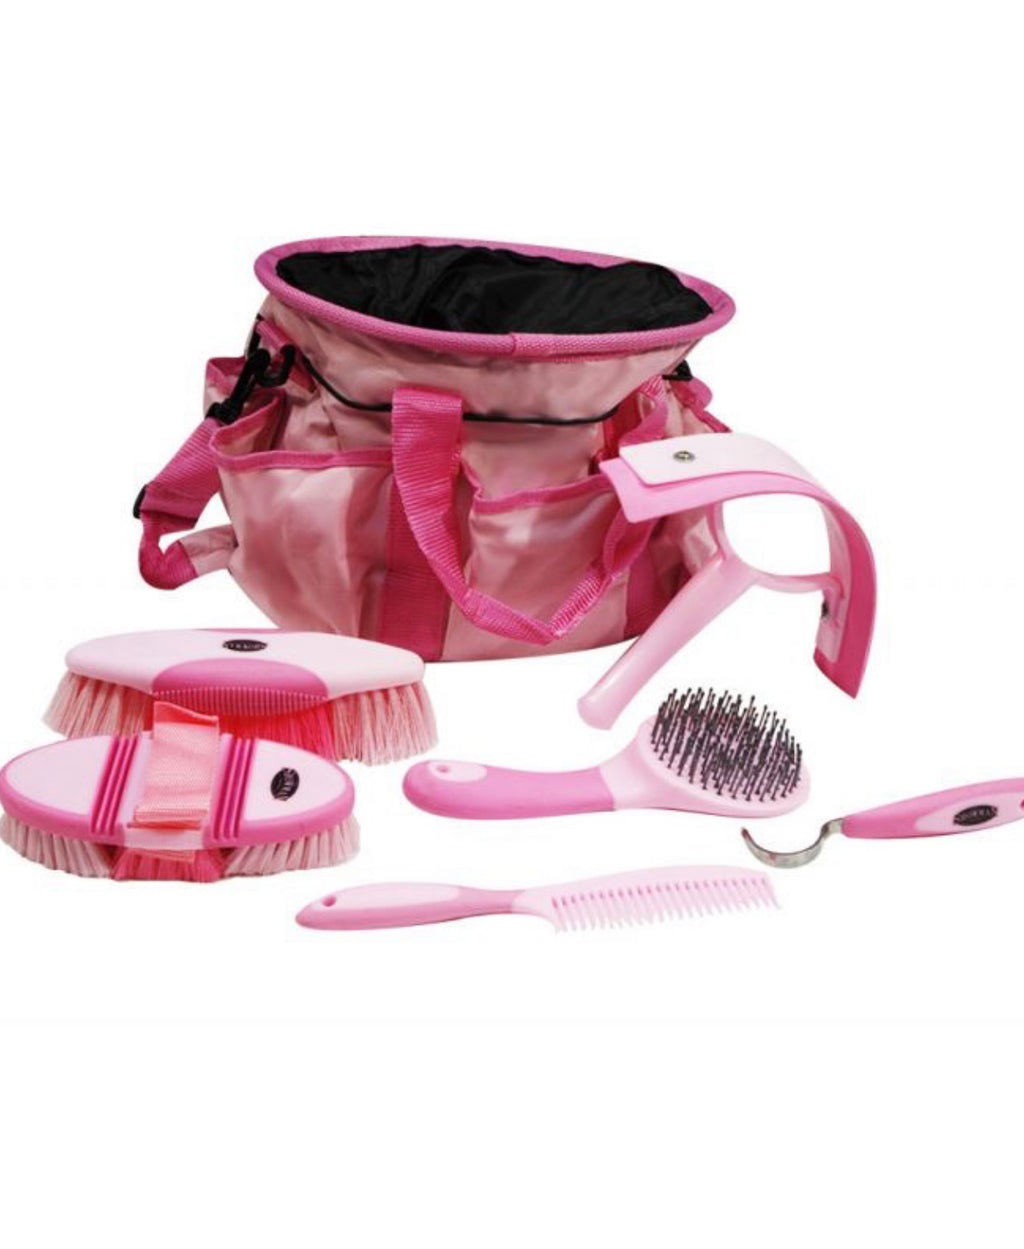 Grooming kit Backpack, pink